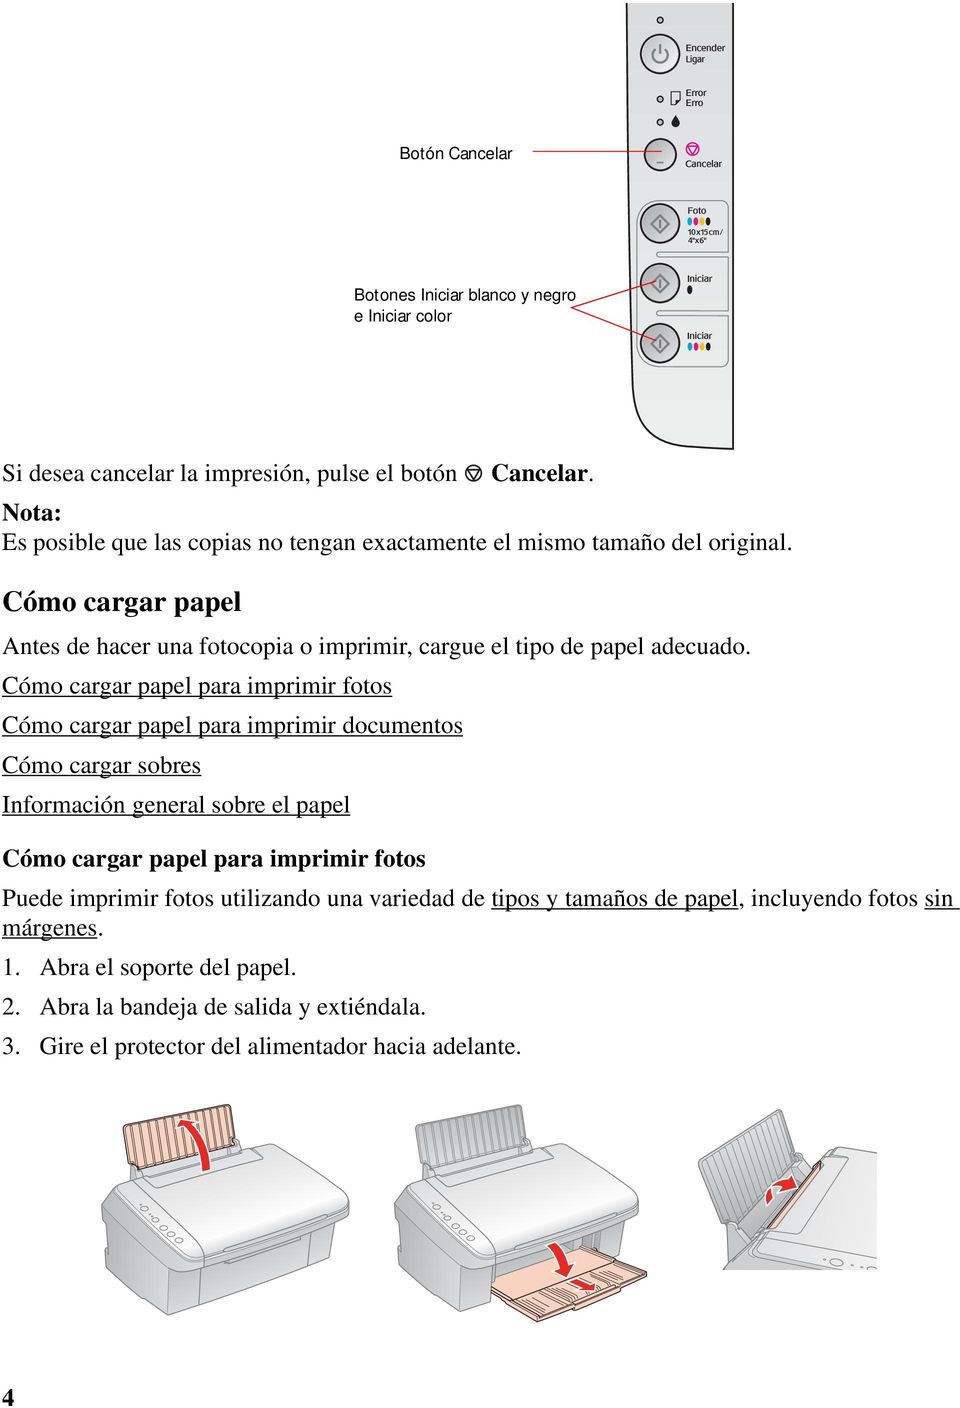 Cómo cargar papel para imprimir fotos Cómo cargar papel para imprimir documentos Cómo cargar sobres Información general sobre el papel Cómo cargar papel para imprimir fotos